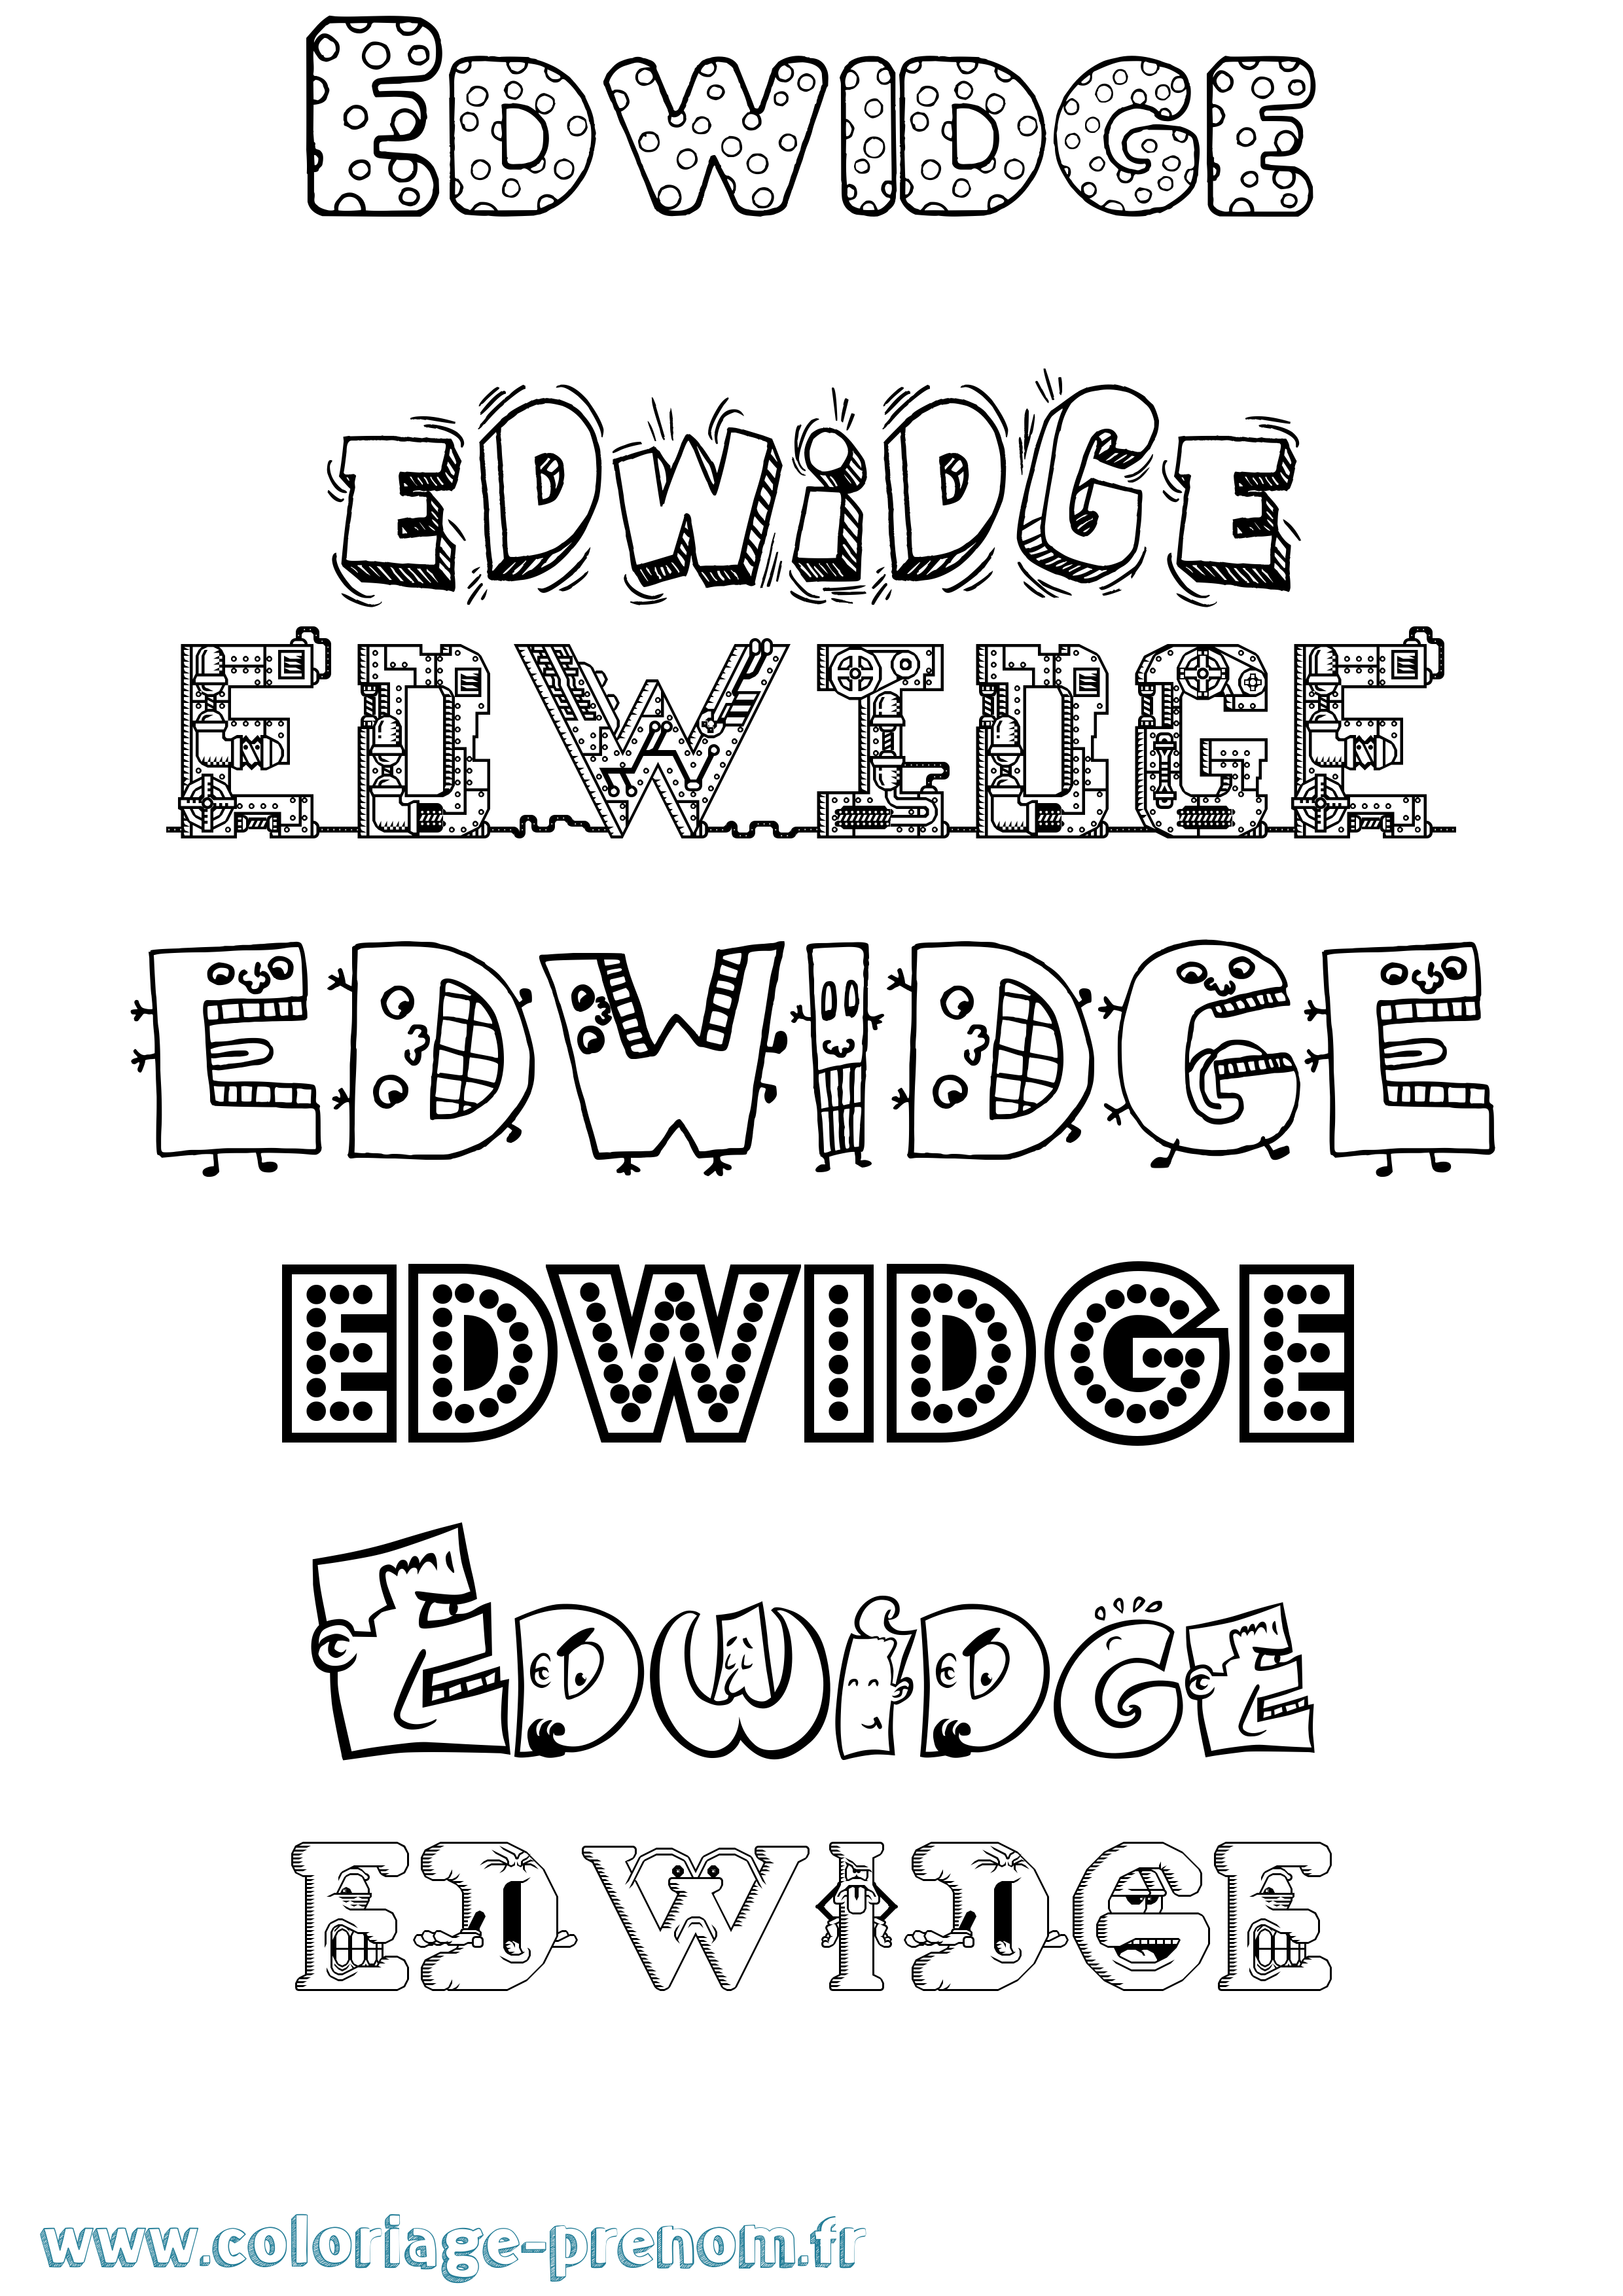 Coloriage prénom Edwidge Fun